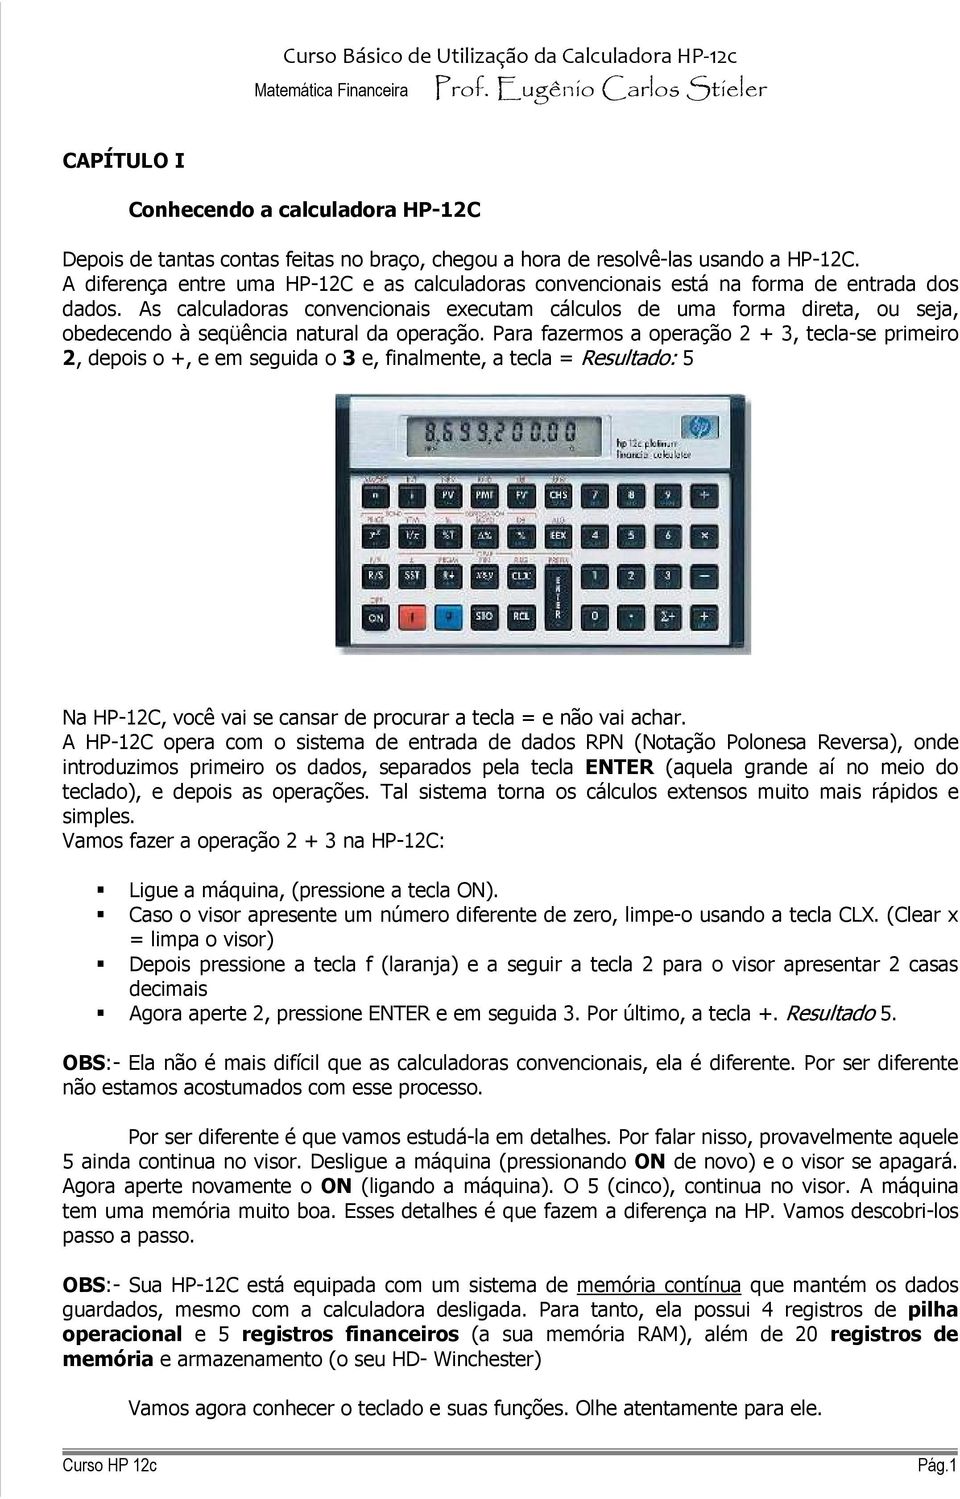 As calculadoras convencionais executam cálculos de uma forma direta, ou seja, obedecendo à seqüência natural da operação.